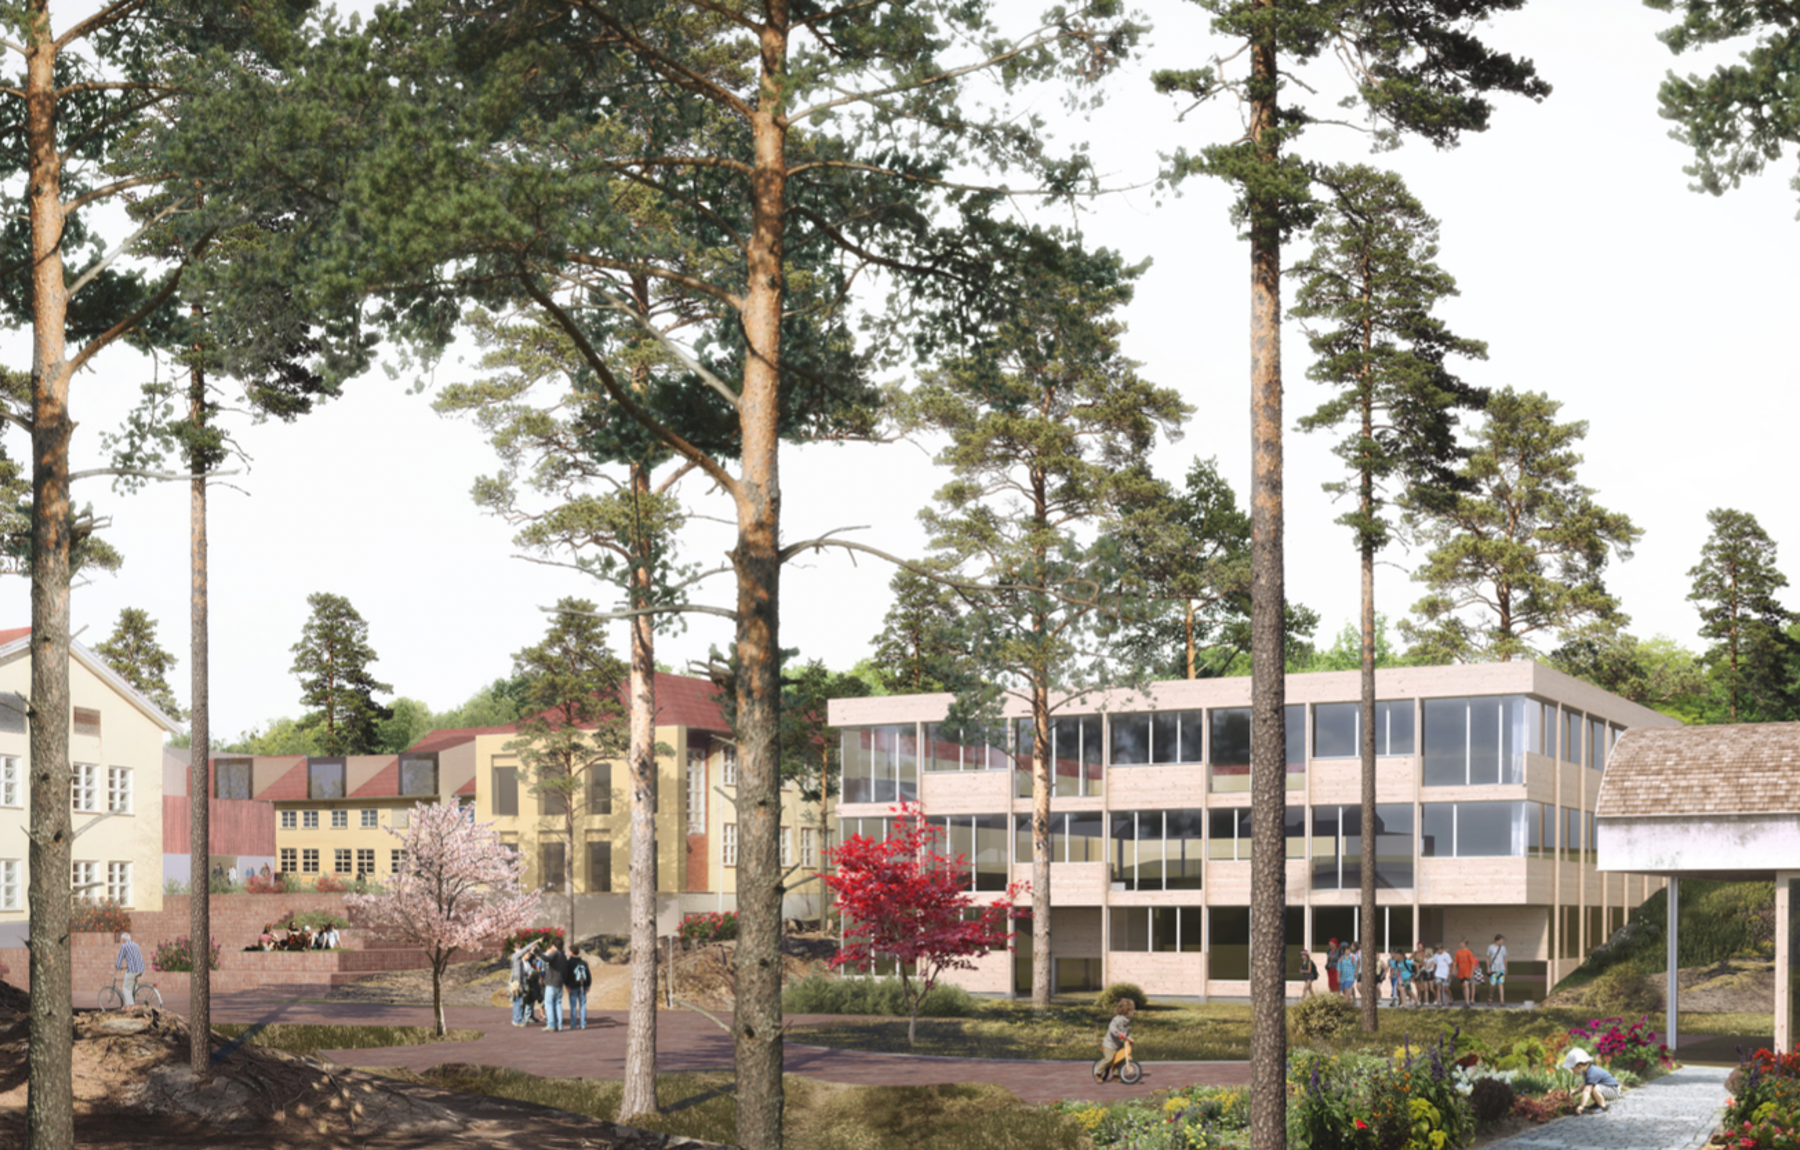  Ny barneskole, speiderhus og barnebondegård med Barneskolen borettslag i Nord. Illustrasjon: Lie Øyen